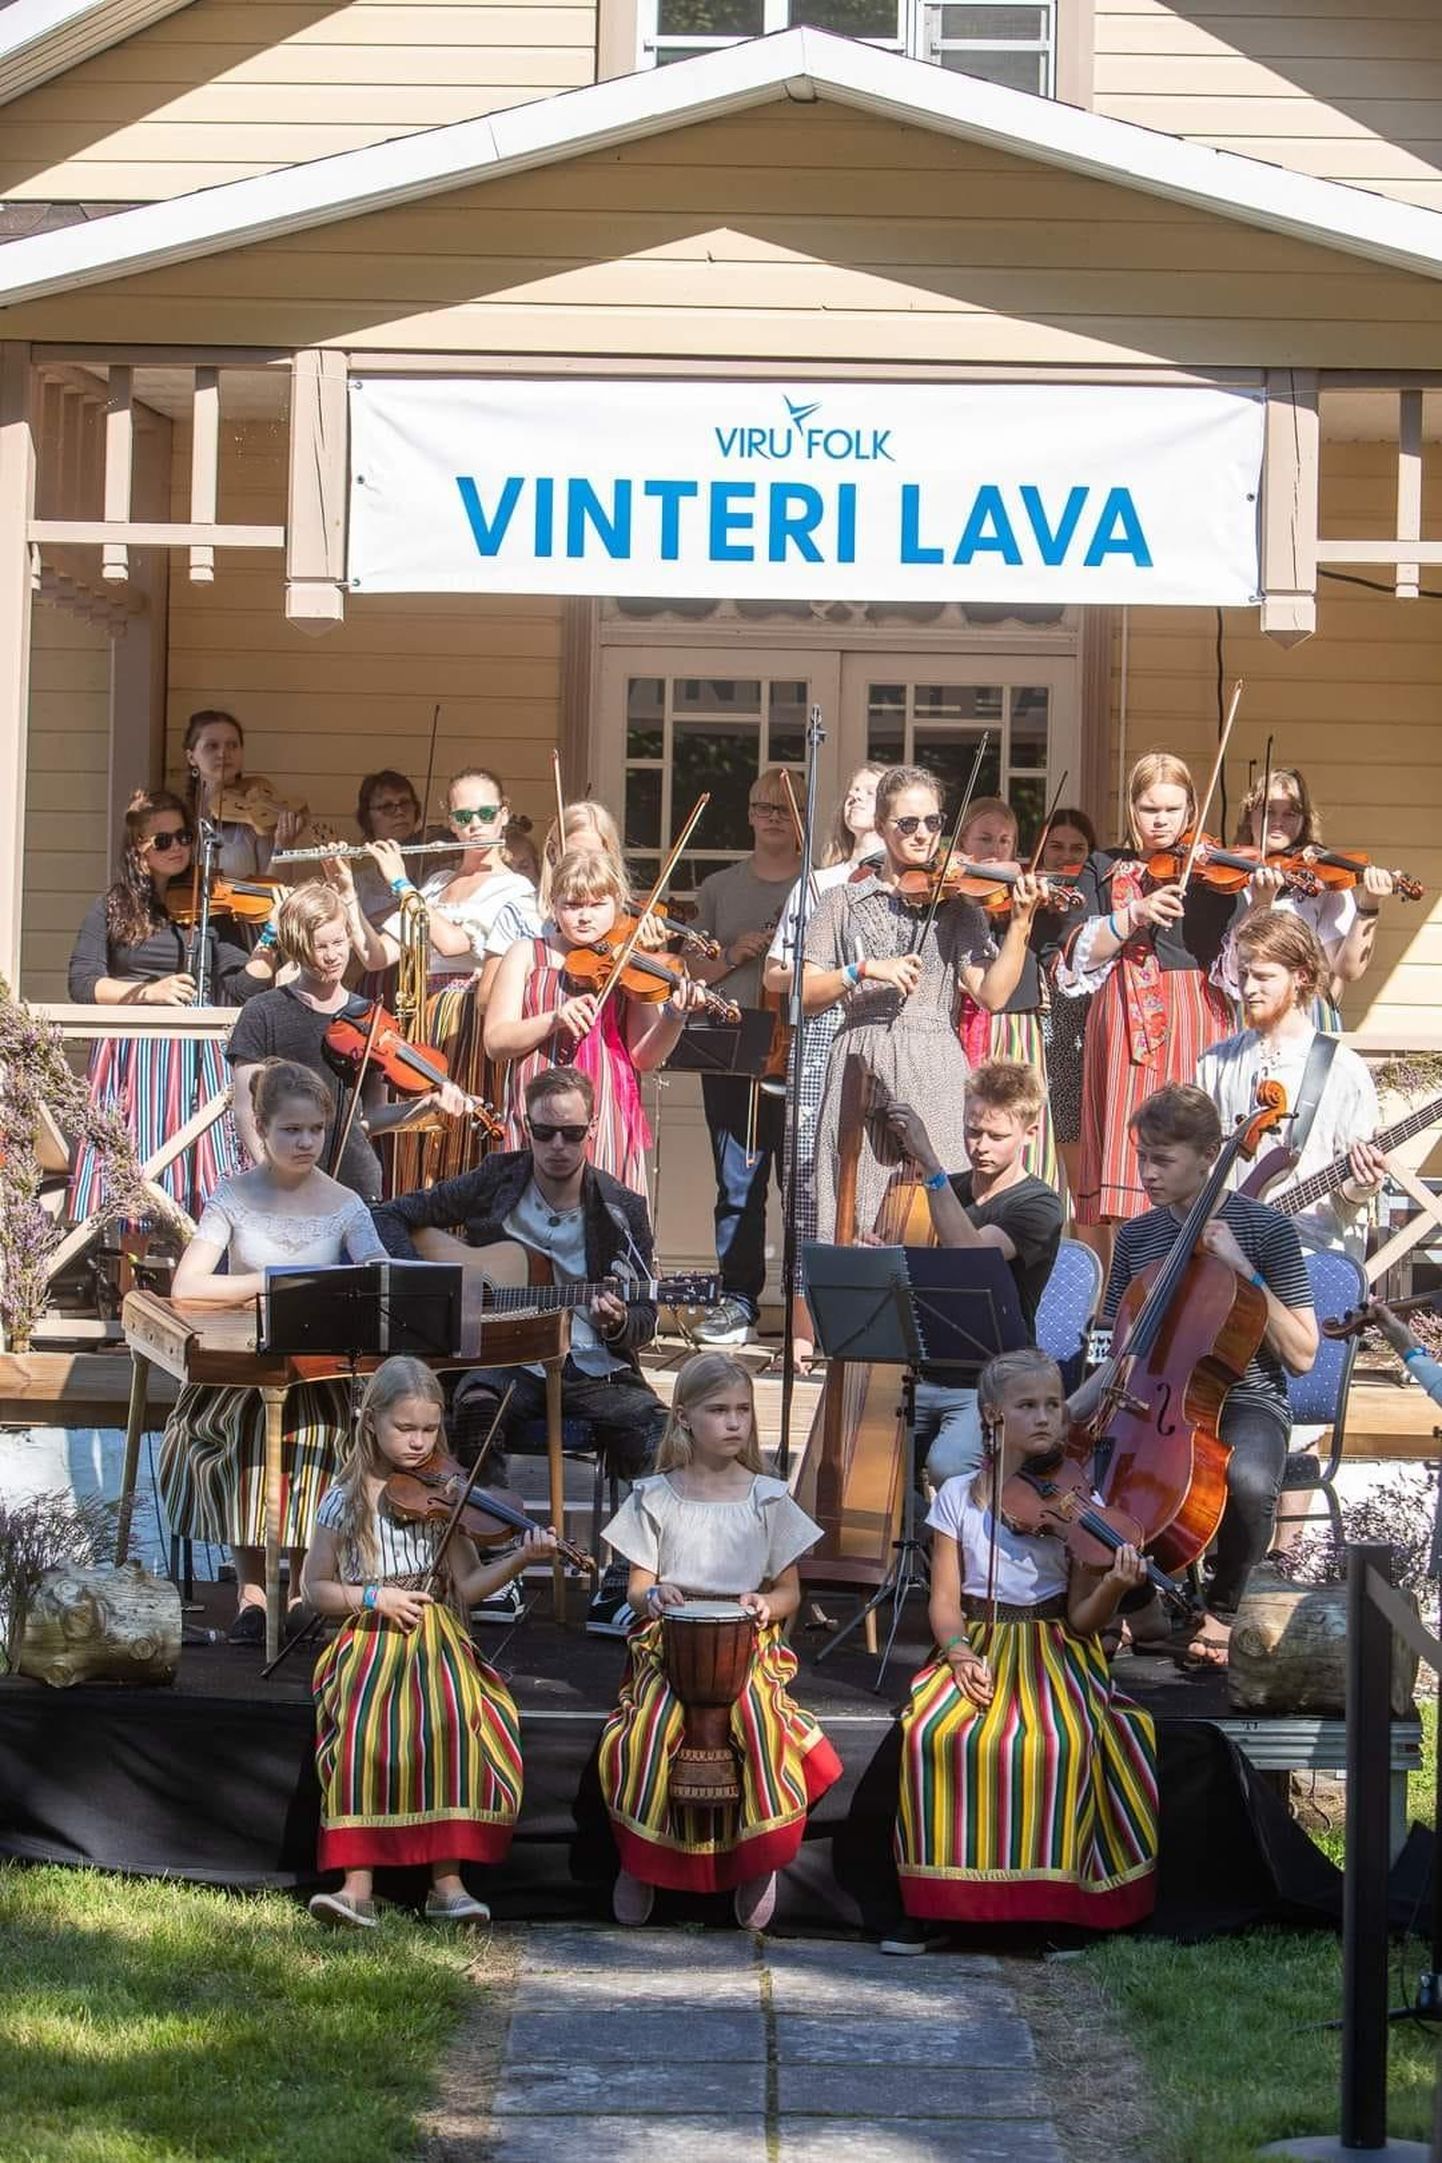 Virumaa Noorteorkestri Pärimusmuusikud on esinenud kümnel Viru Folgil ja neid esinemisi oodatakse alati väga. Ka pühapäevasel kontserdil kõlavad paljud lood, mis just Viru Folgi tarvis selgeks õpitud.